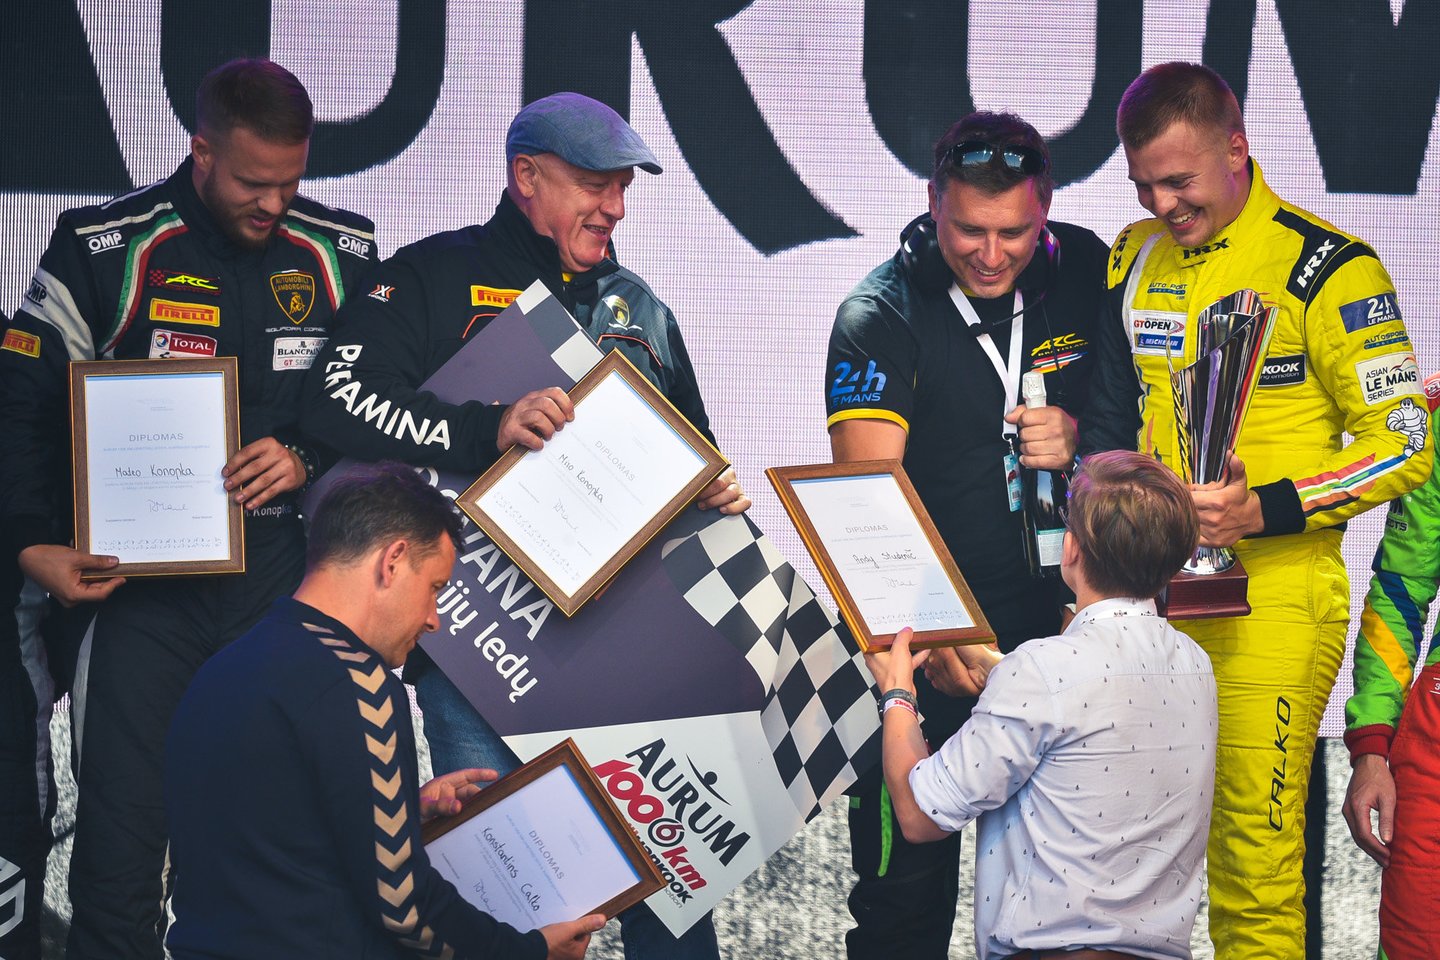  1006 km lenktynių kvalifikacijos nugalėtojų apdovanojimai.<br> Vytauto Pilkausko nuotr.